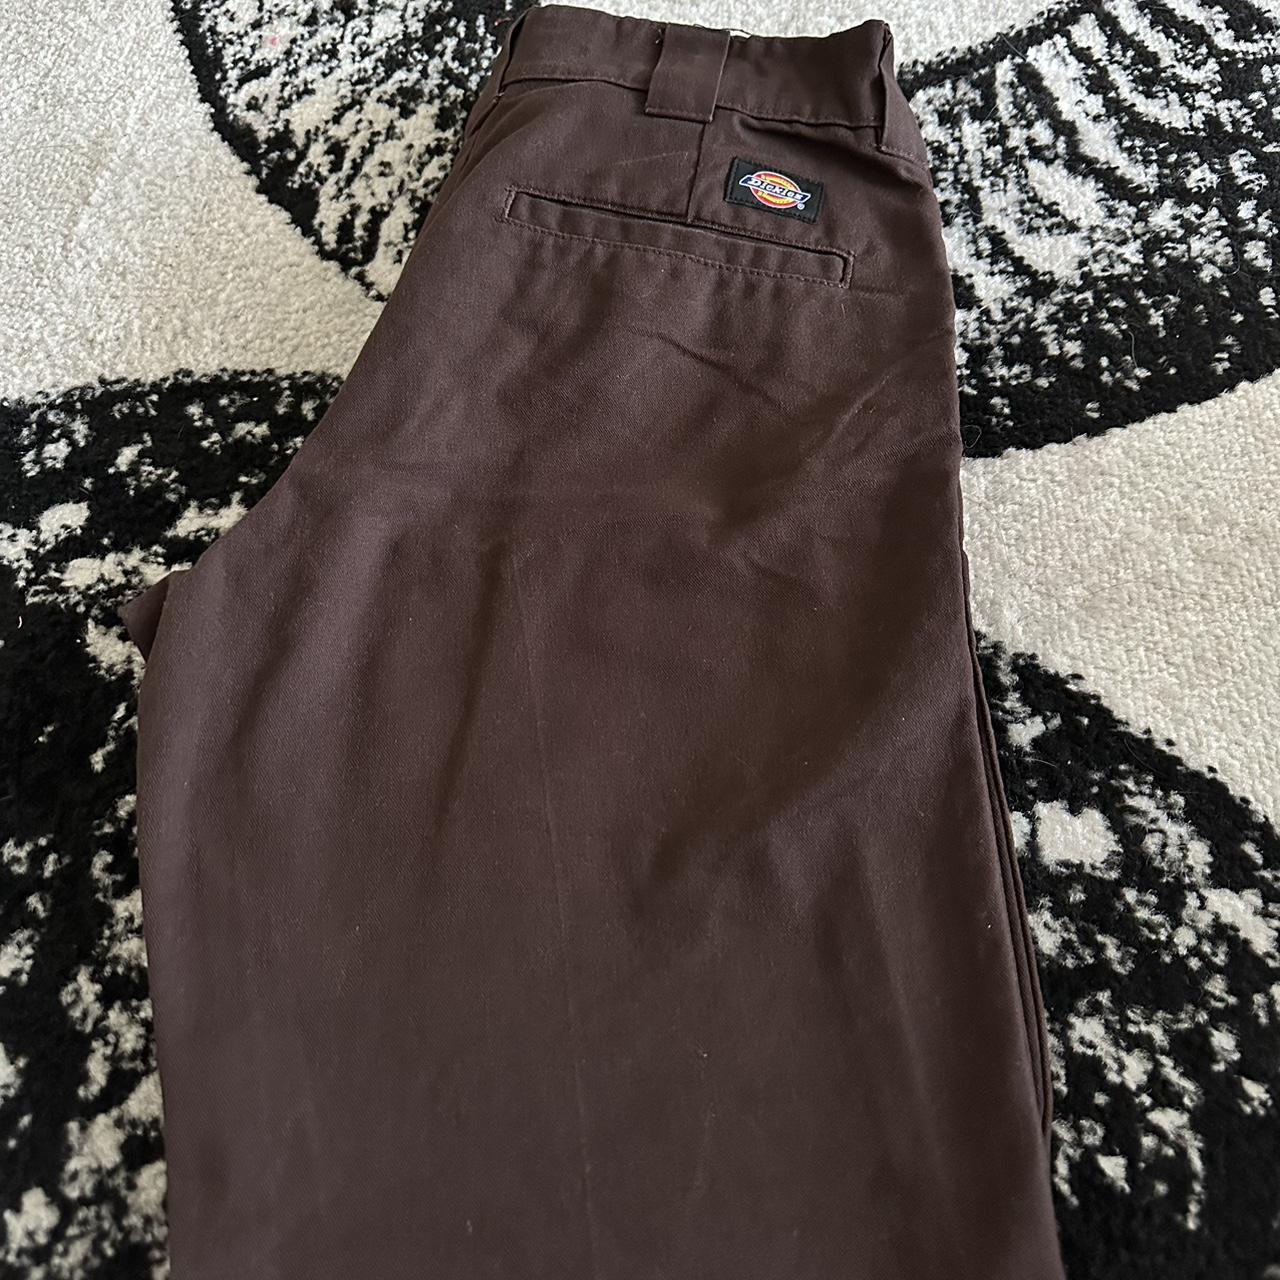 Dickies brown work pants Size- 29/30 - Depop